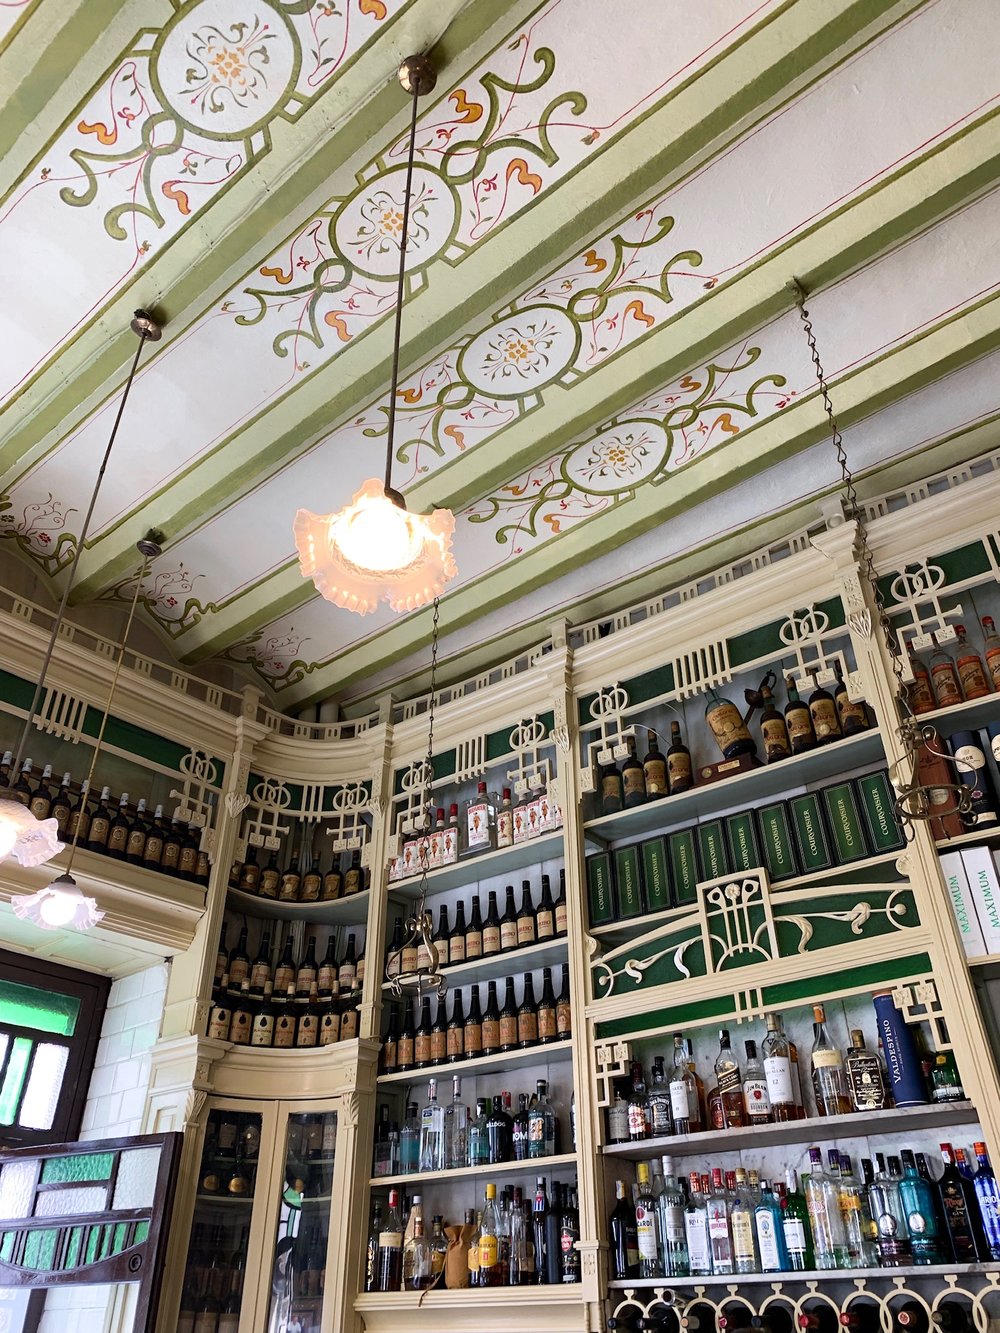 The oldest bar in Seville